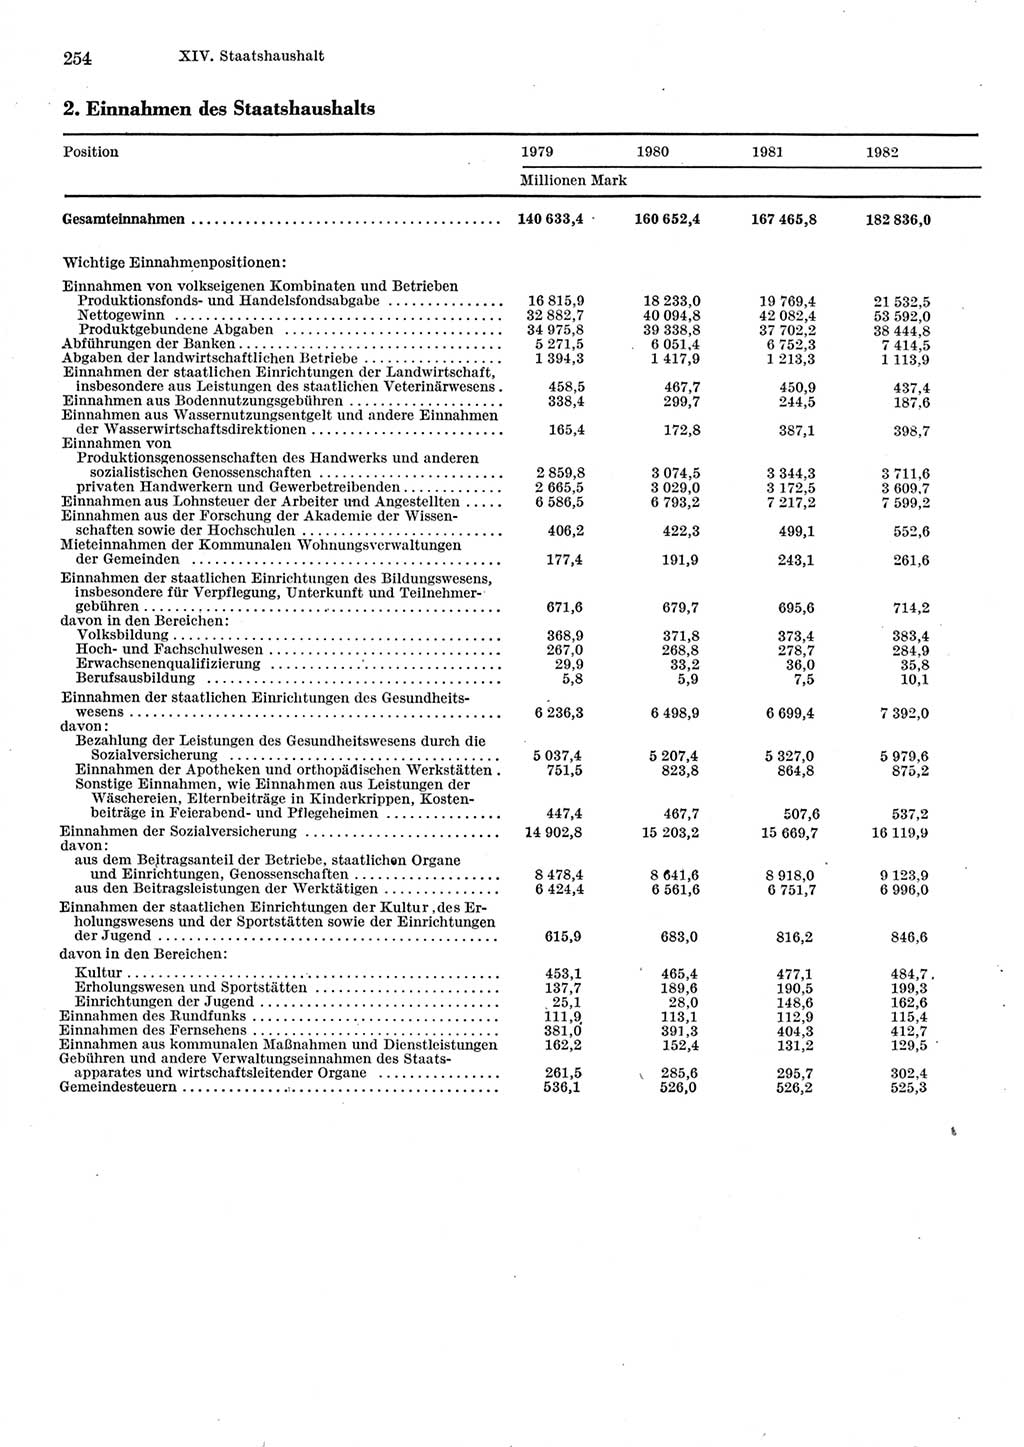 Statistisches Jahrbuch der Deutschen Demokratischen Republik (DDR) 1983, Seite 254 (Stat. Jb. DDR 1983, S. 254)